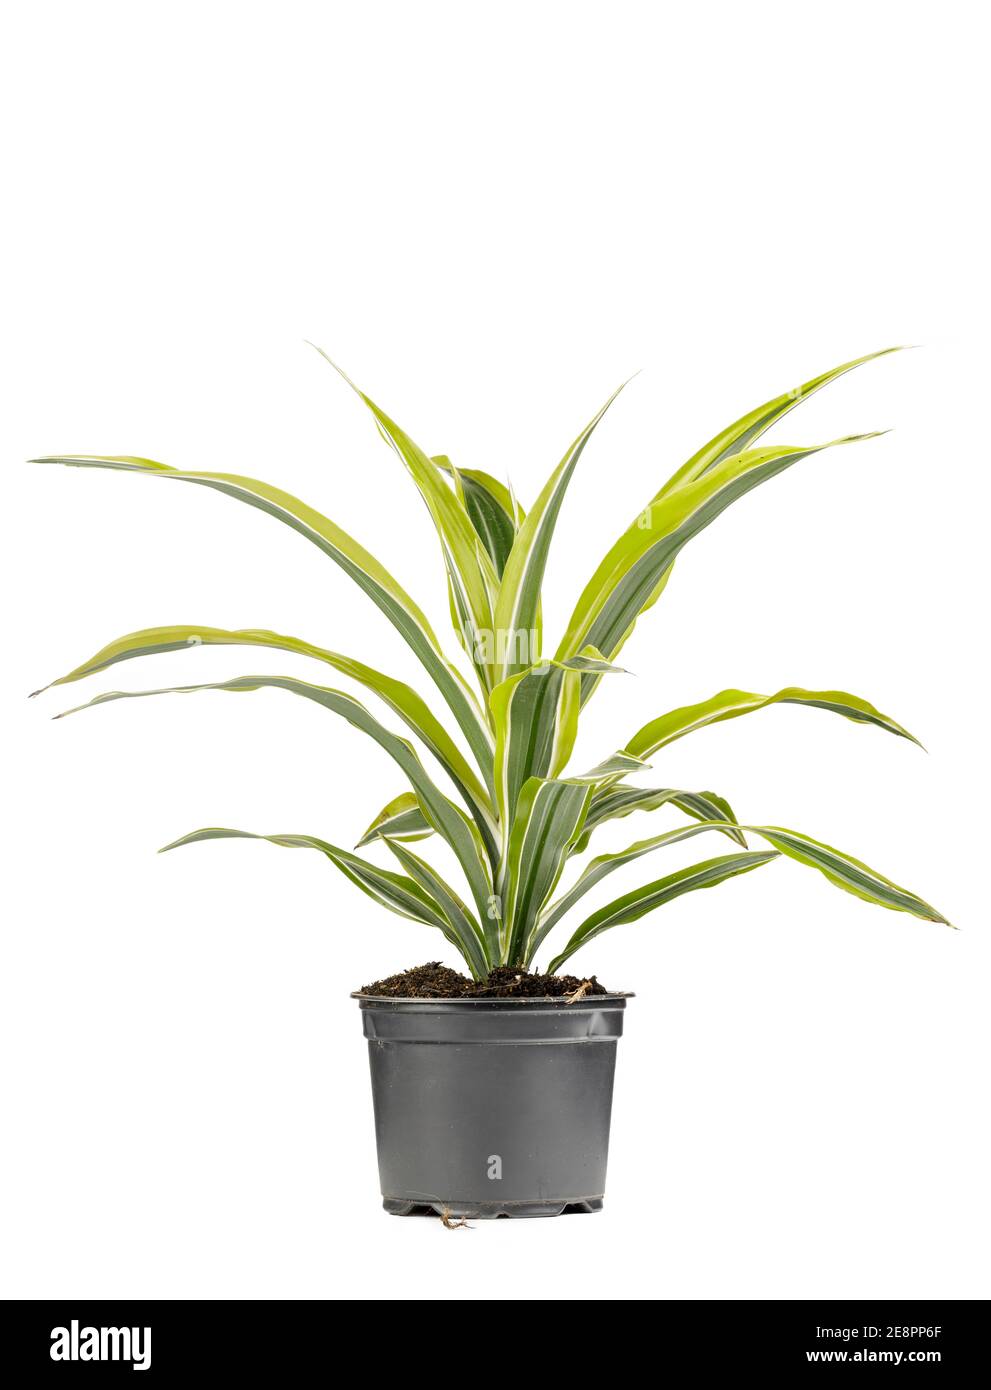 Grüne dekorative Pflanze mit langen Blättern in grau eingegossen Blumentopf Stockfoto